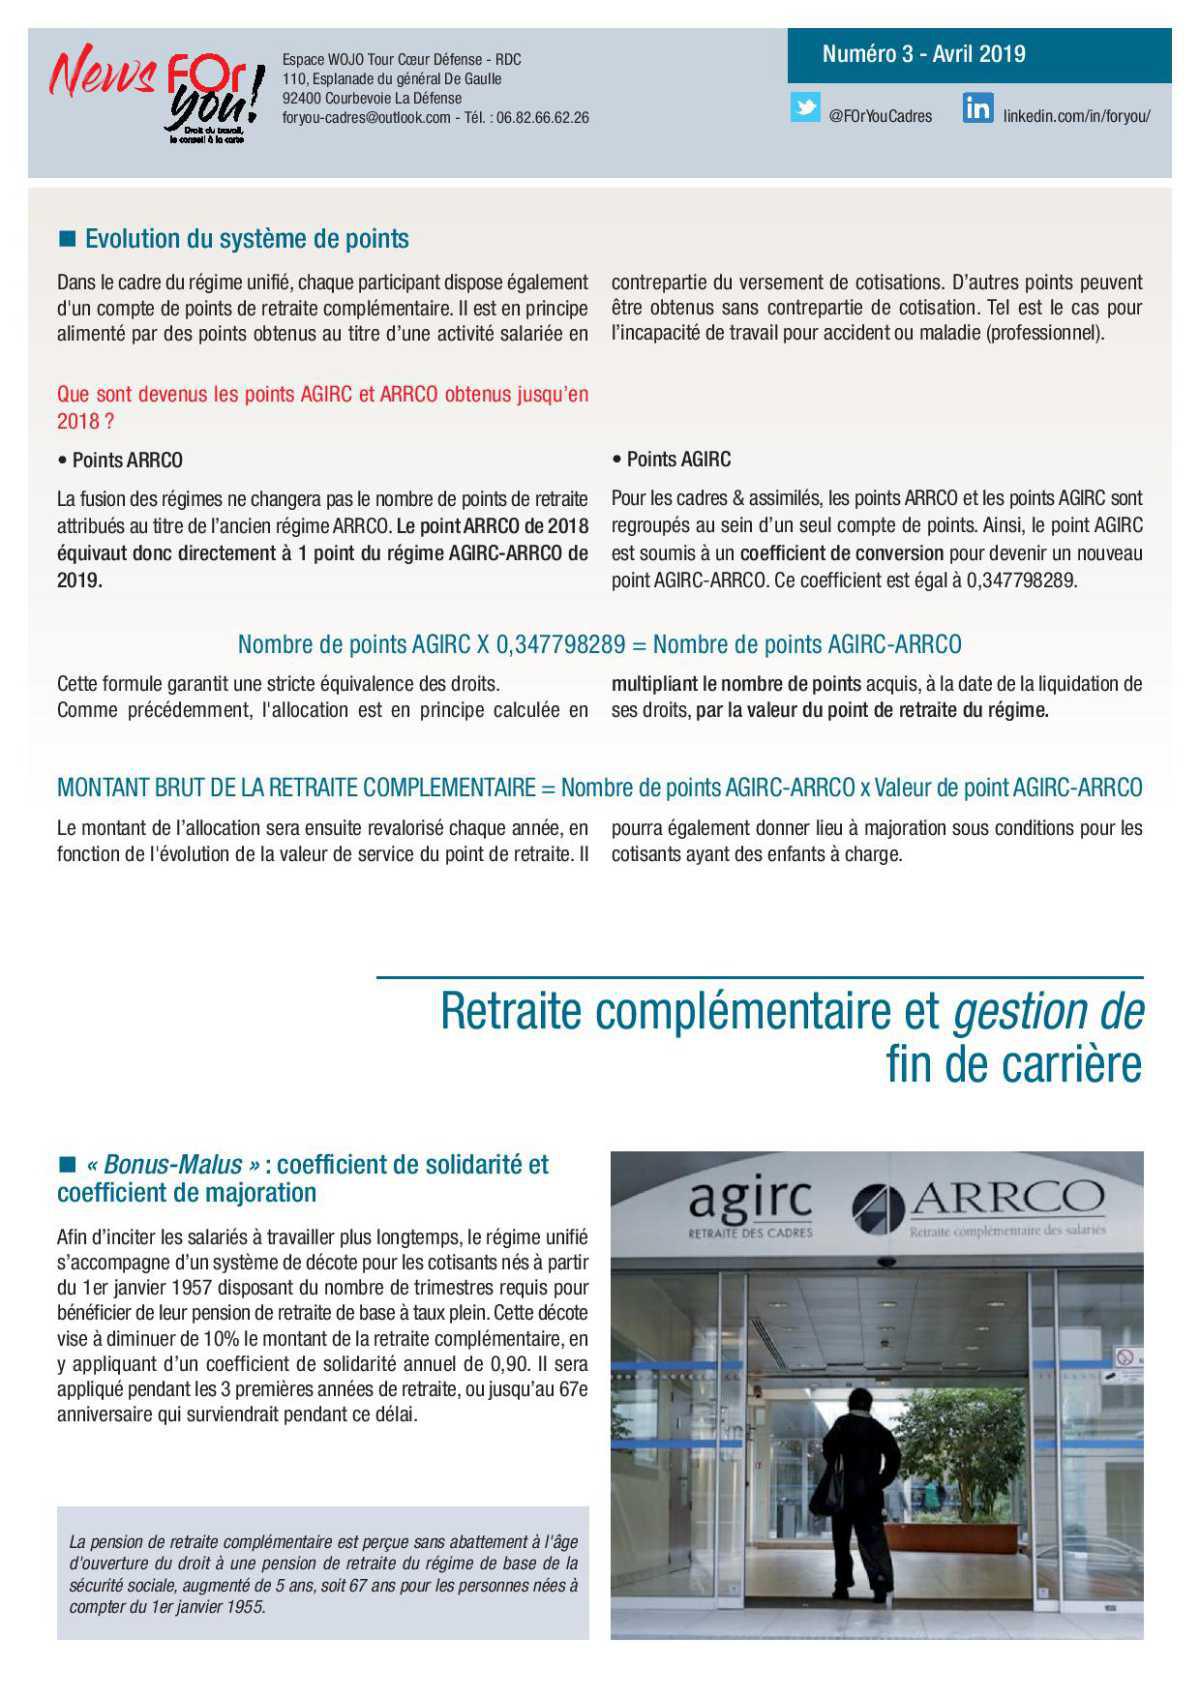 FUSION AGIRC-ARRCO : un nouveau régime de retraite complémentaire